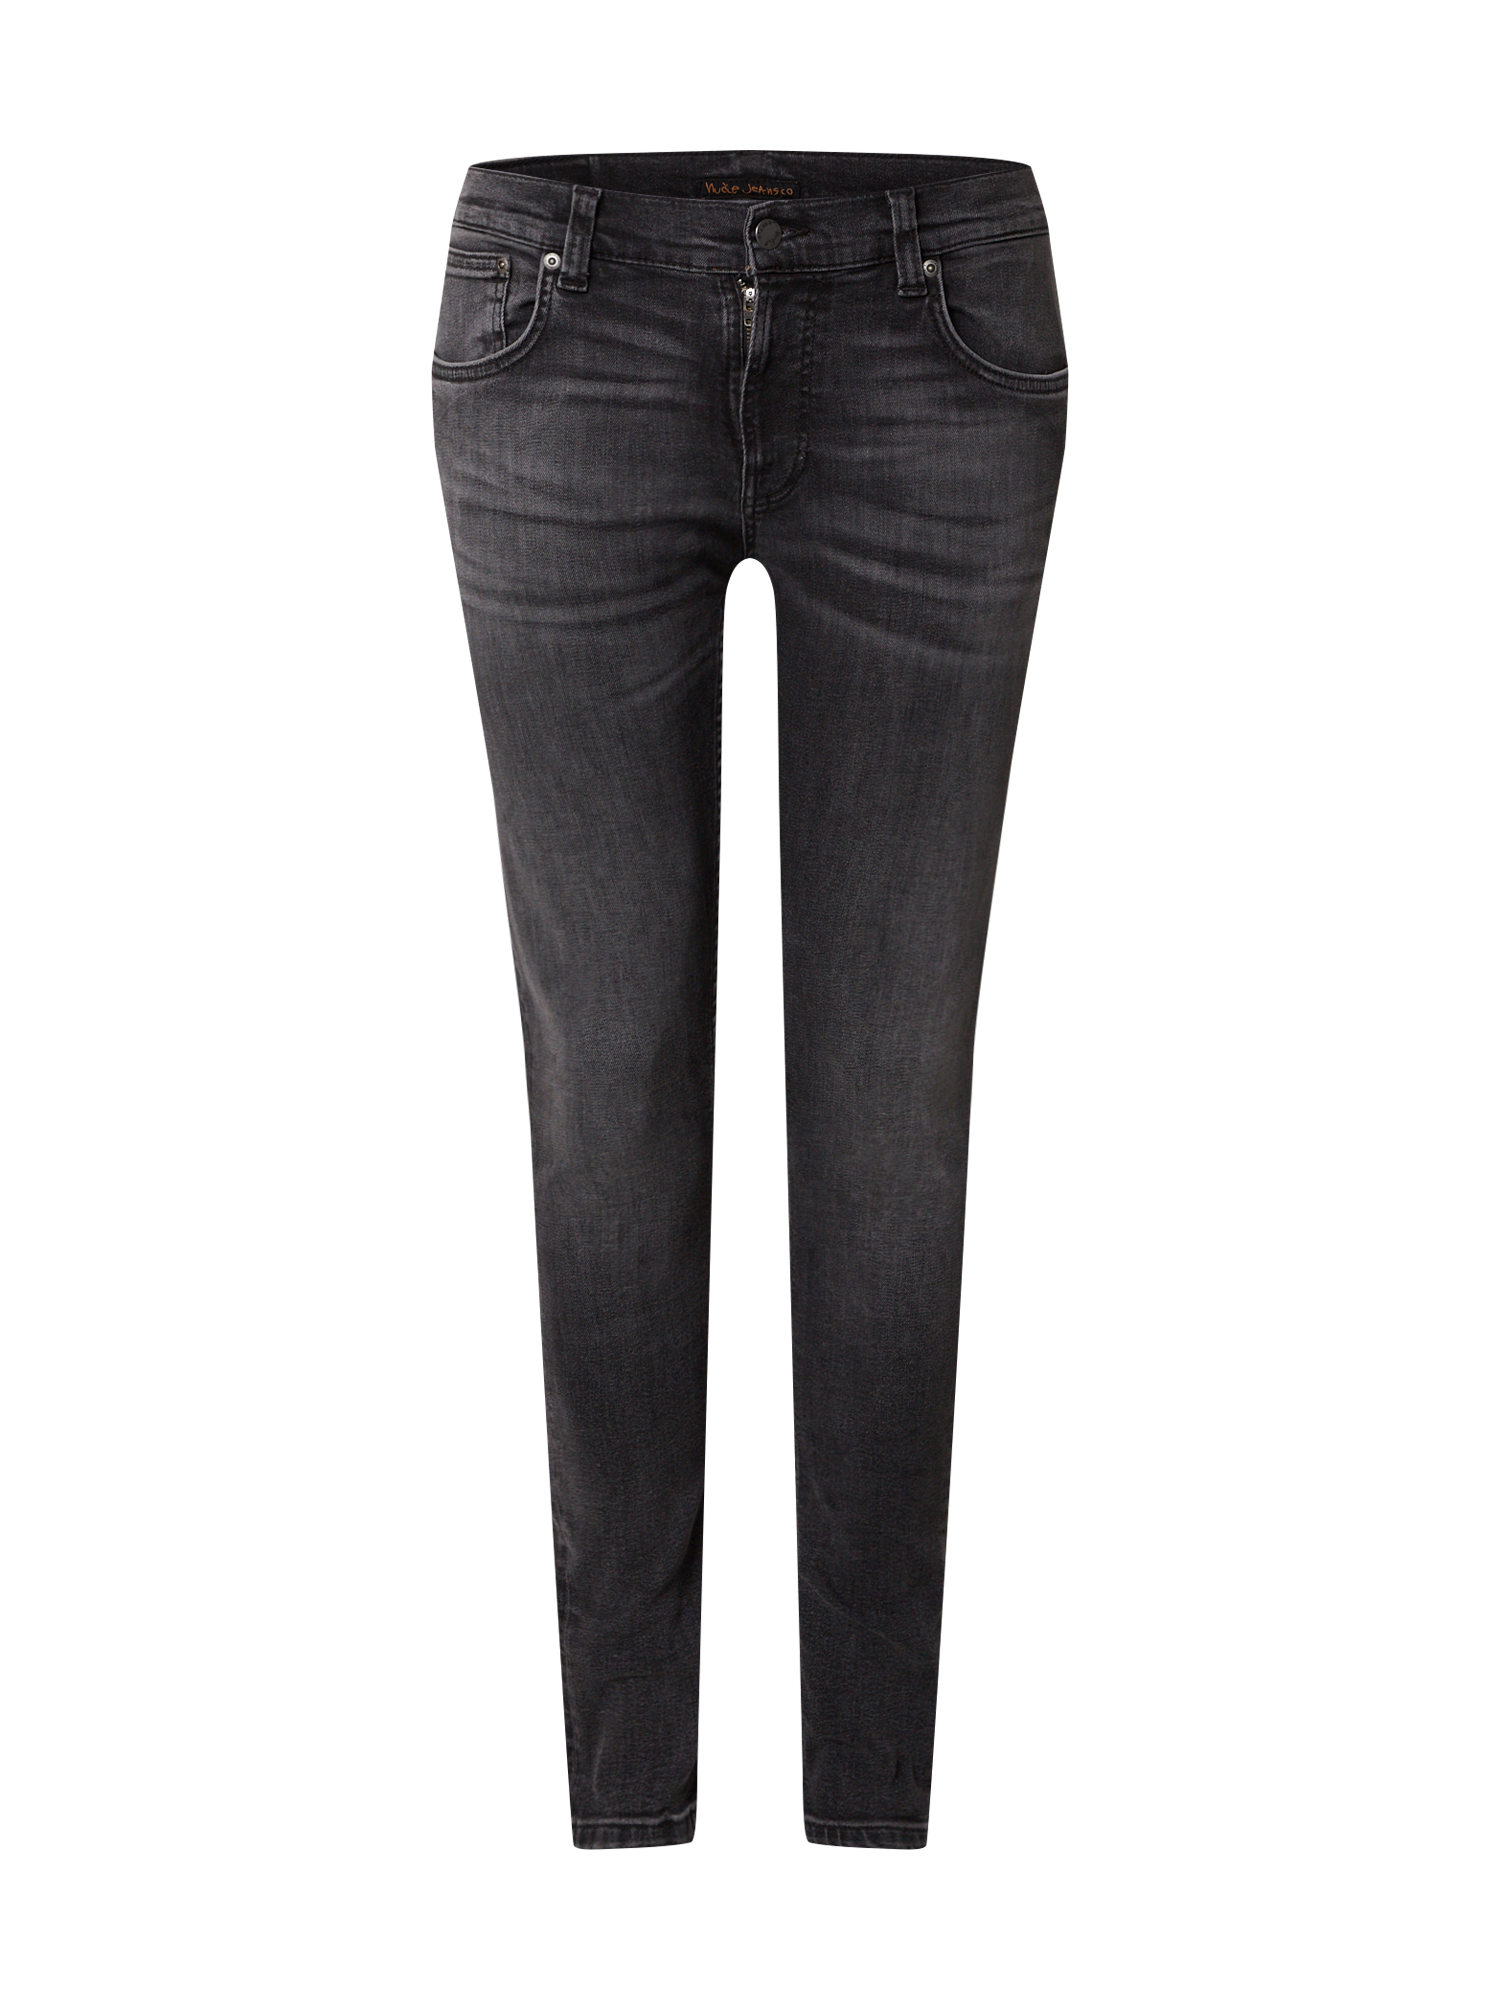 pbSmX Odzież Nudie Jeans Co Jeansy Tight Terry w kolorze Szarym 